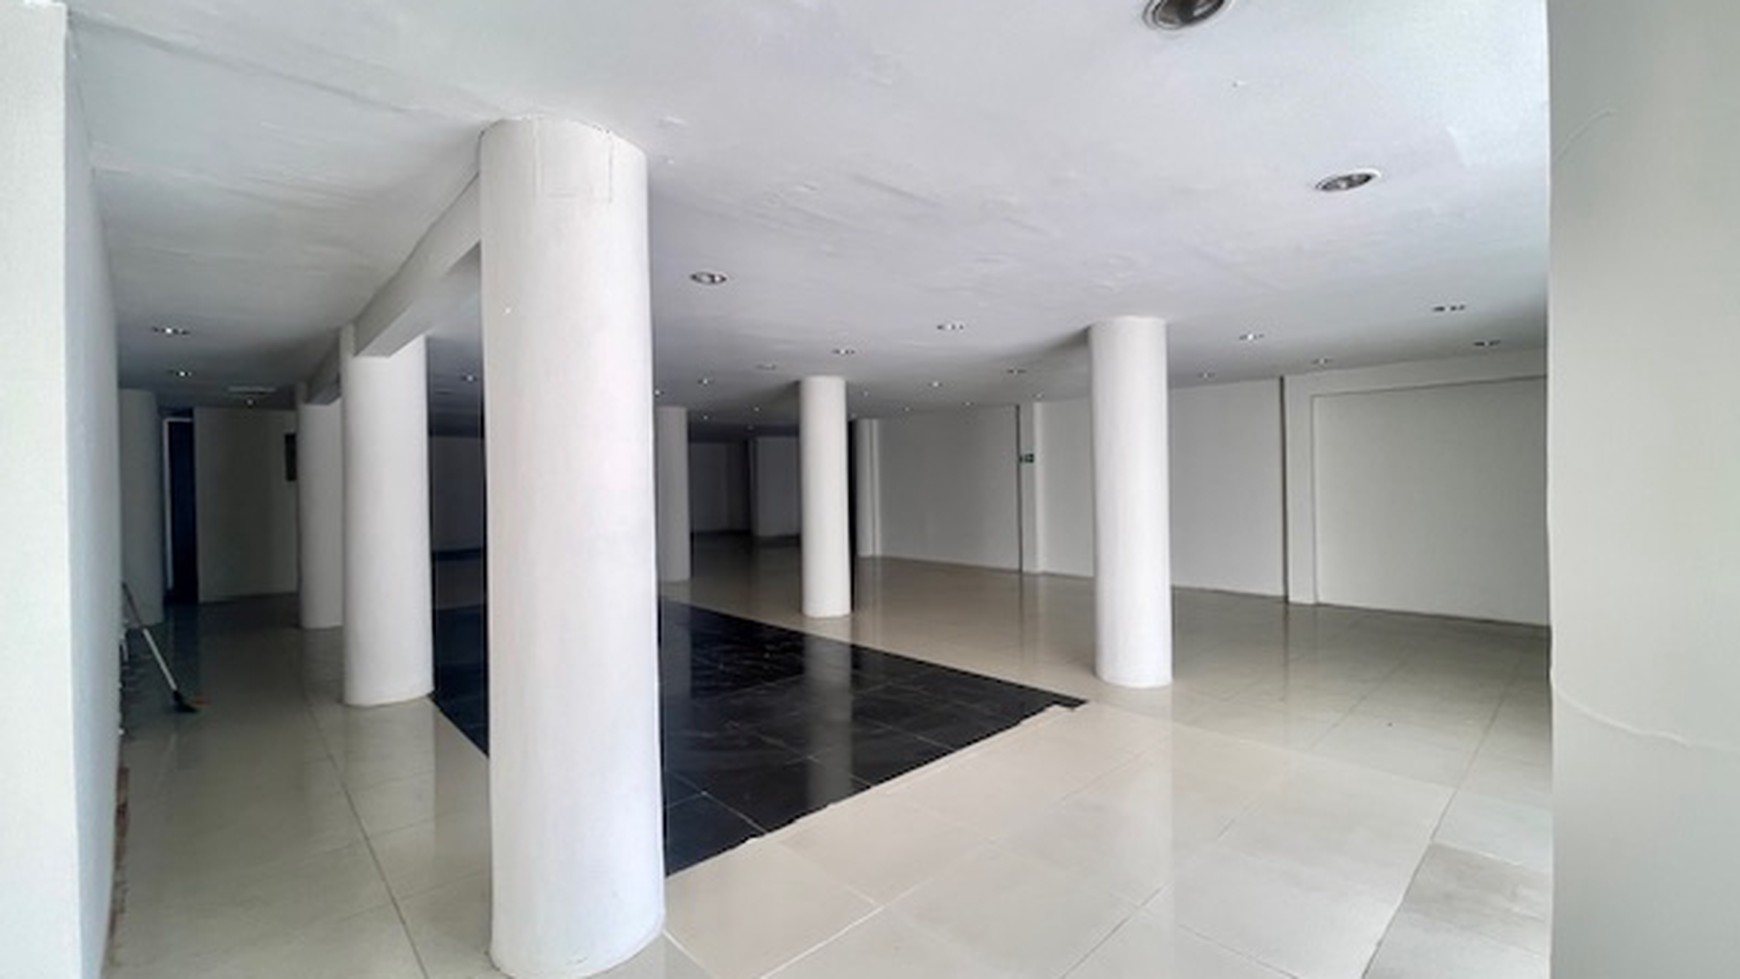 Kantor luas tanah 1450 meter, Mampang Prapatan / Tandean, parkir super luas, siap pakai